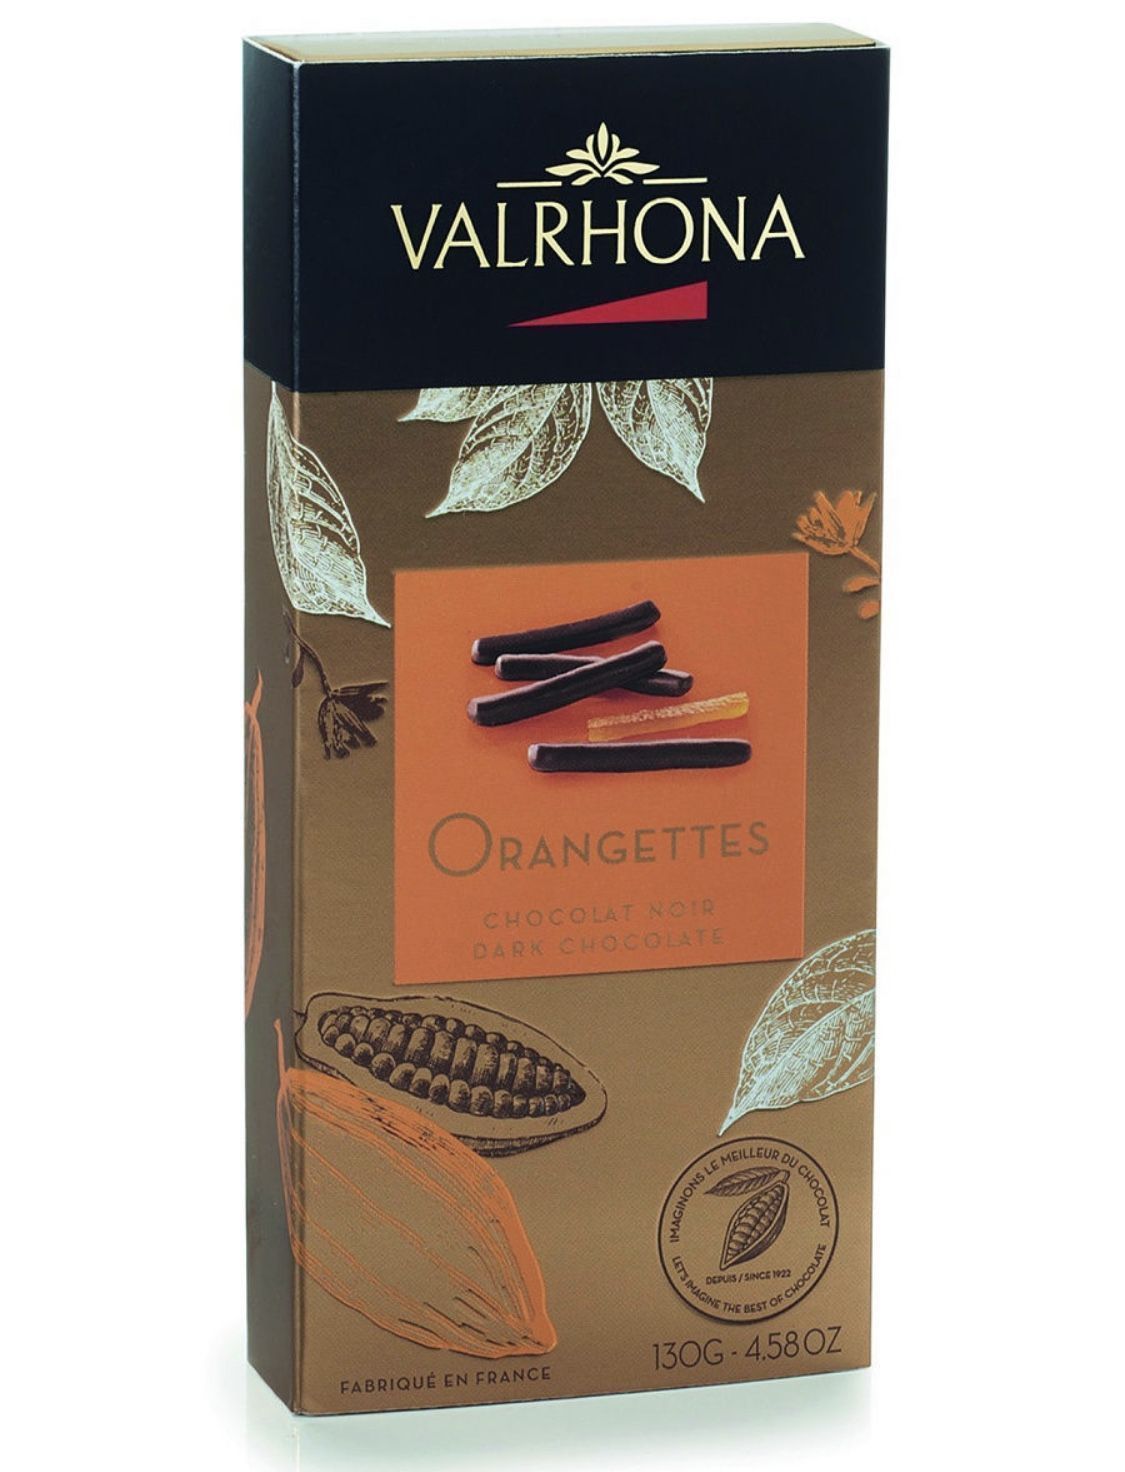 Шоколадные конфеты Valrhona Orangettes апельсиновые цукаты в горьком шоколаде